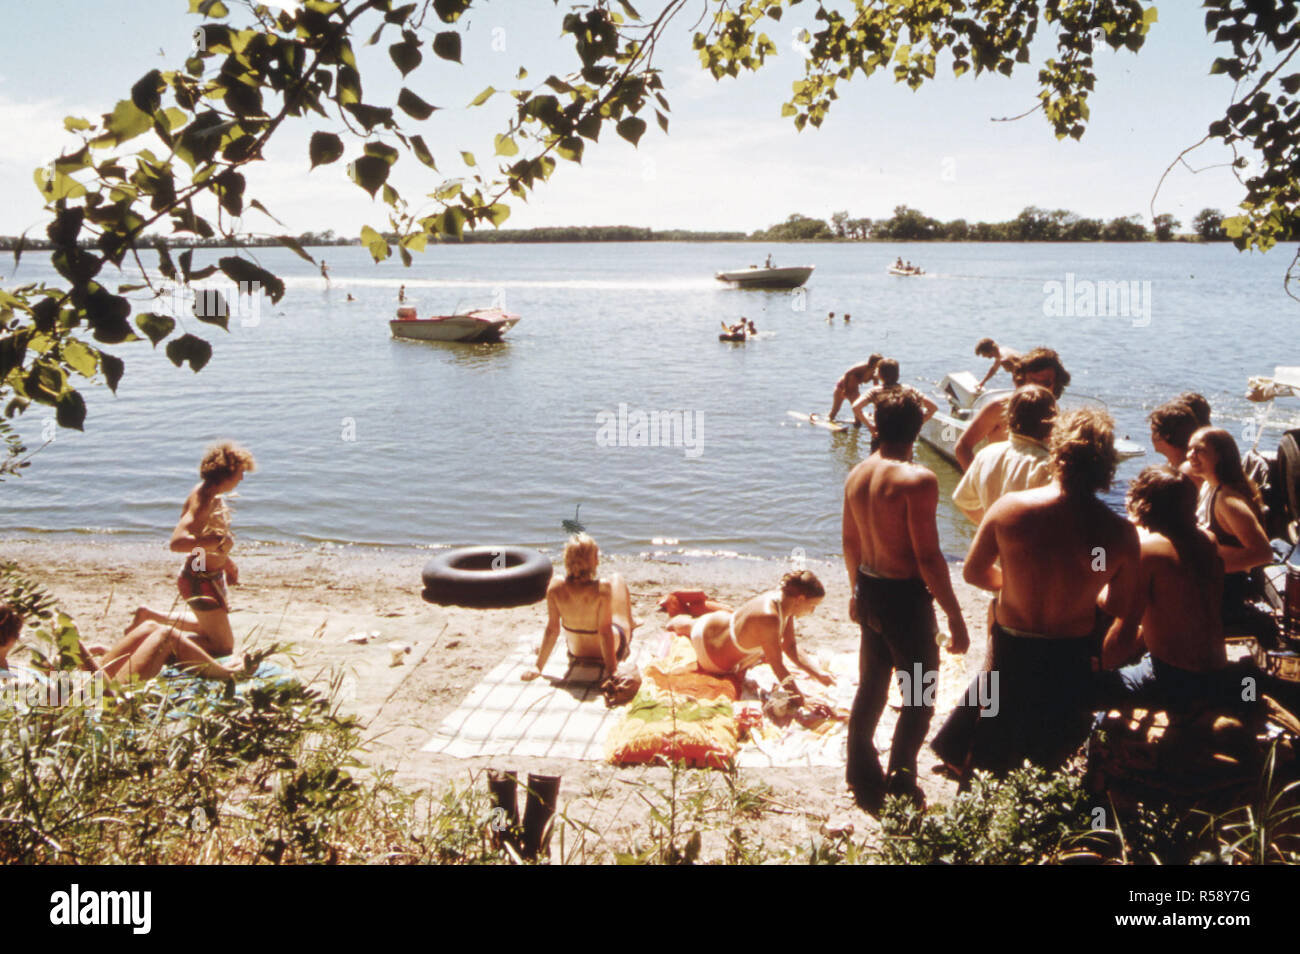 Les jeunes de New Ulm, Minnesota, passer un dimanche la natation et la navigation de plaisance au lac Clear trois milles à l'ouest de la ville, ca. 1975 Banque D'Images